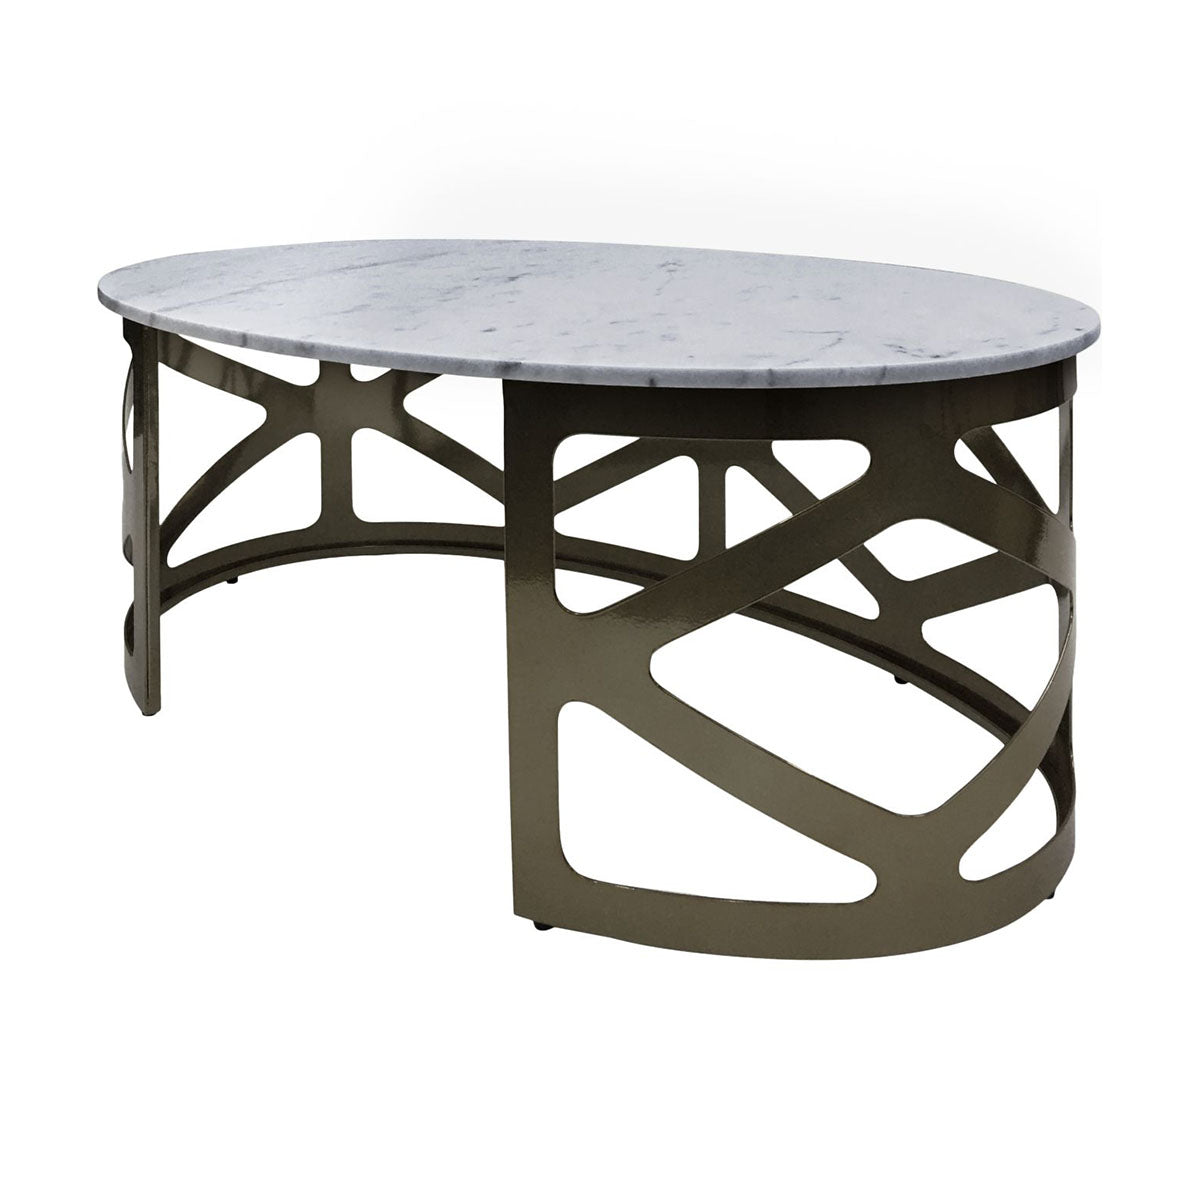 Table basse Metropolitan finition nickel noir métallisé avec marbre gris